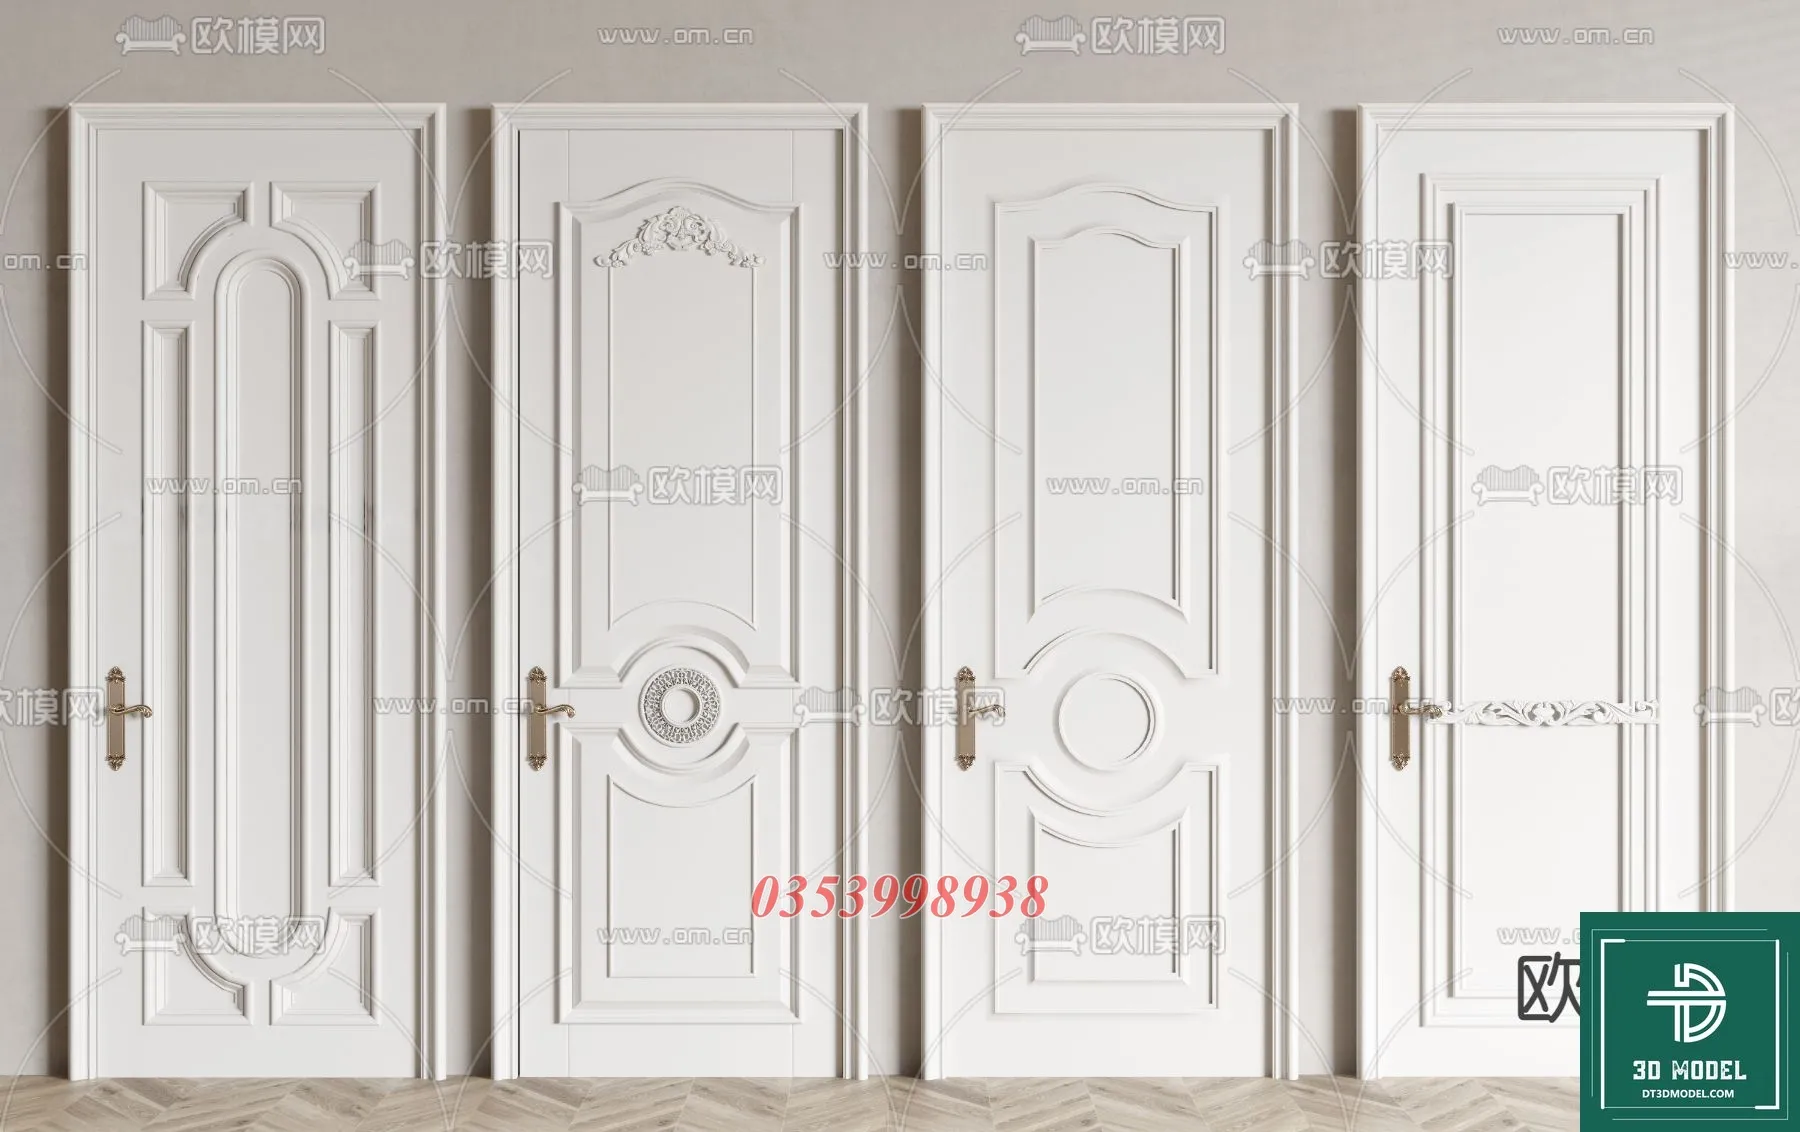 CLASSIC DOOR – 3dsmax MODELS – 115